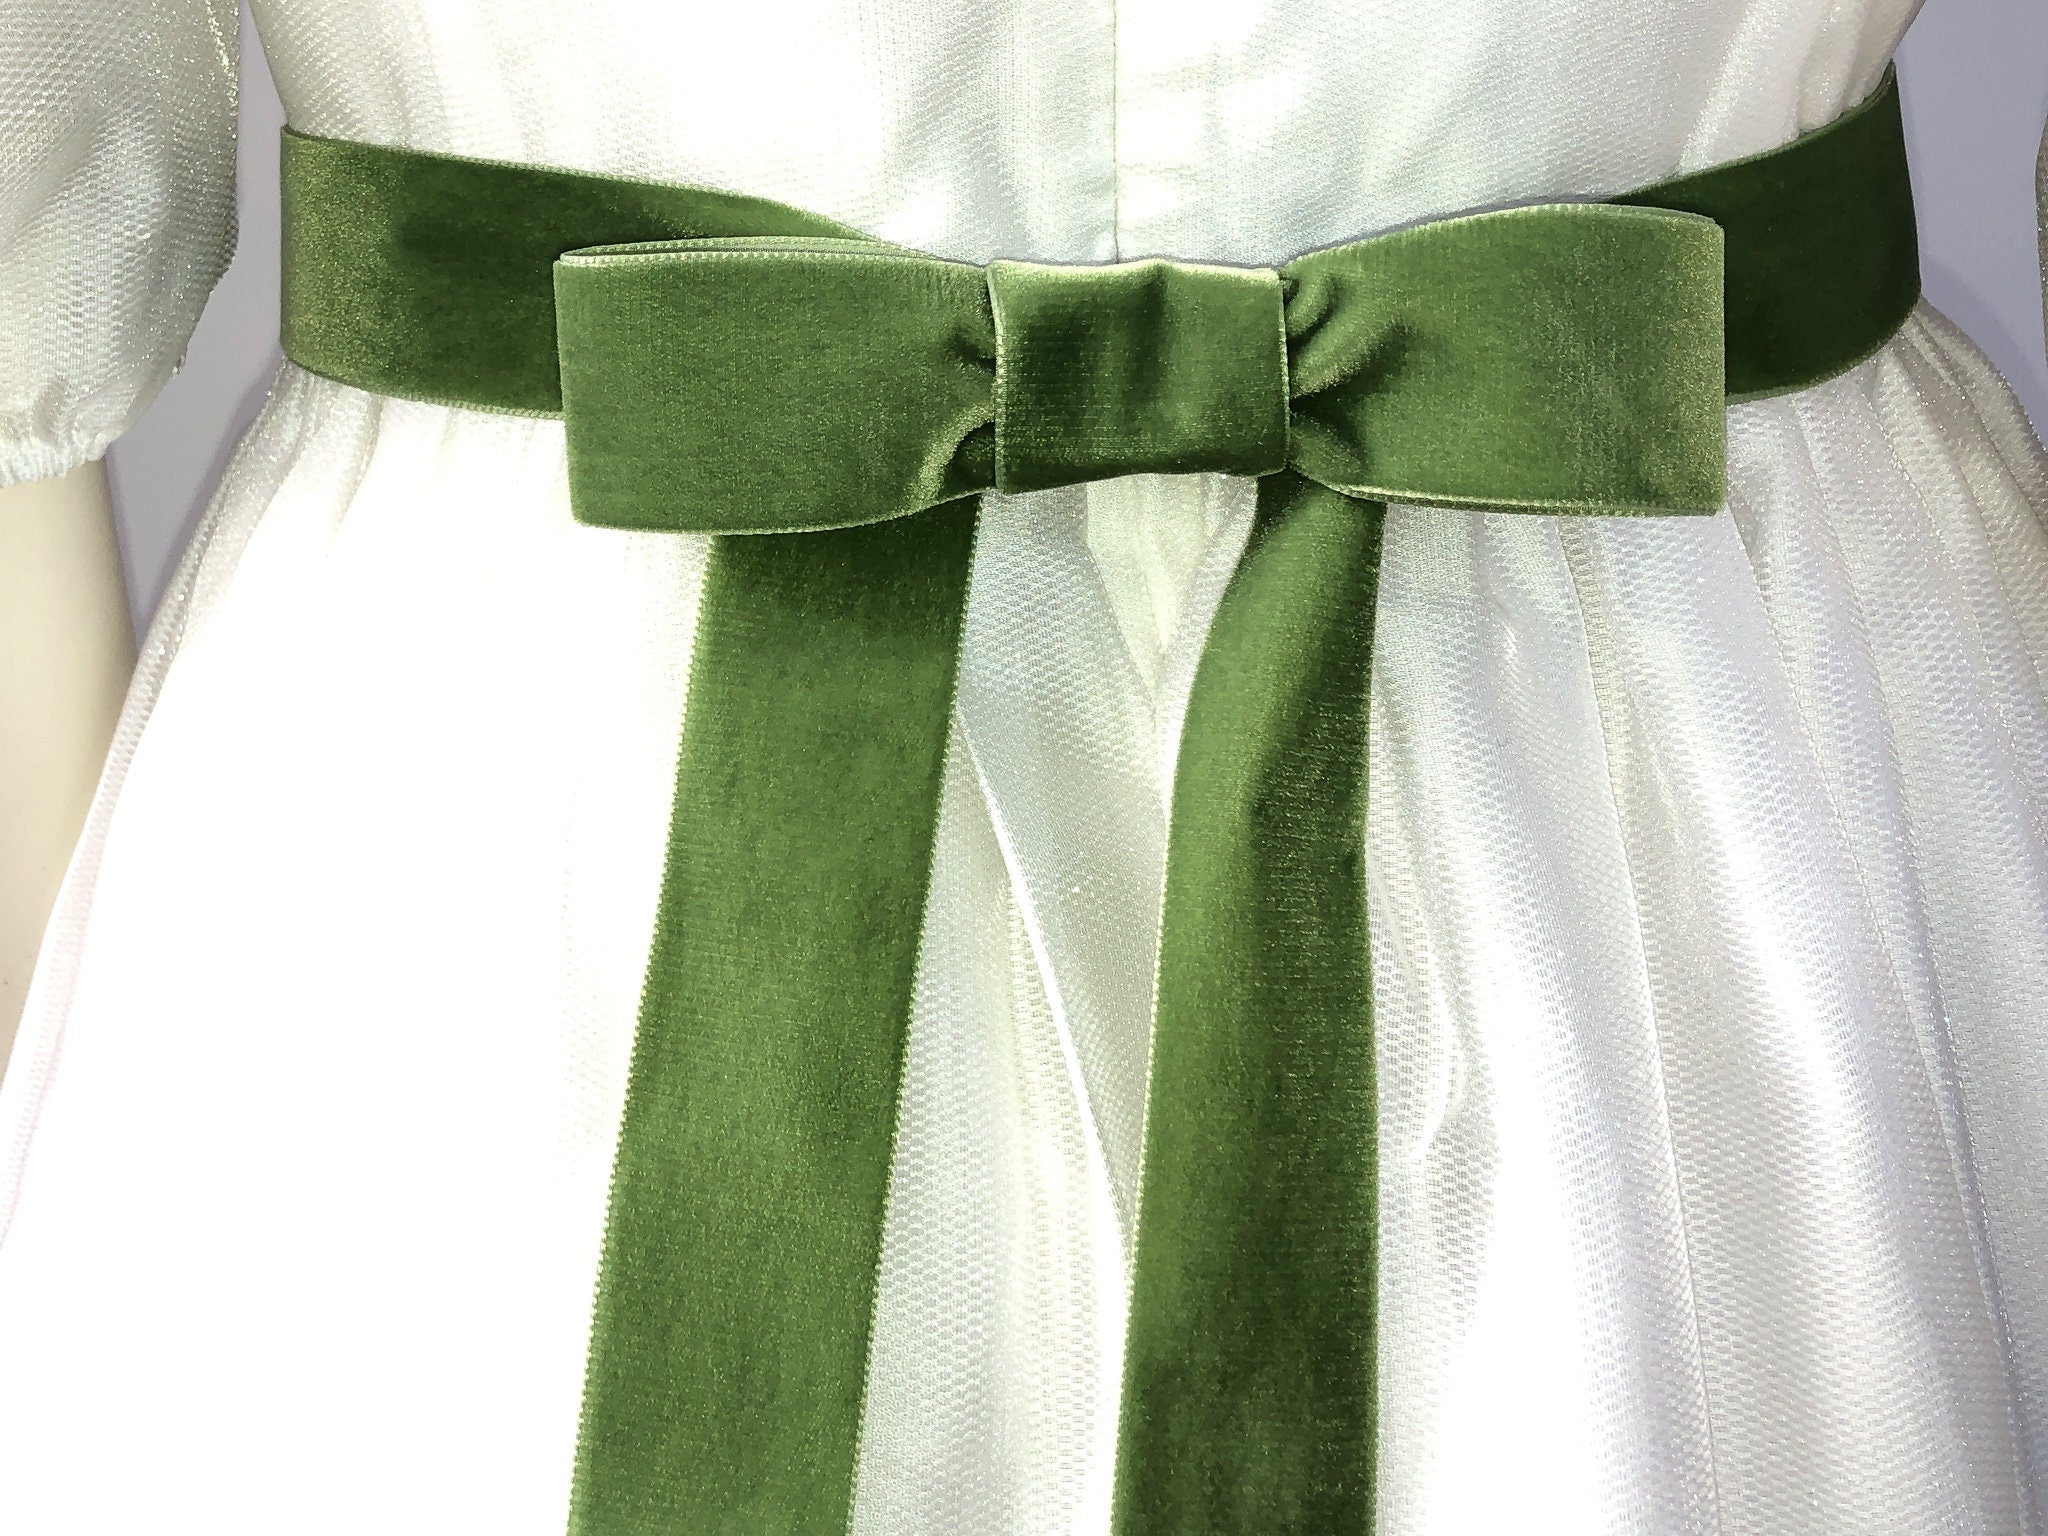 Samtgürtel mit Schleife in Grün, Salbei, Emerald, Petrol. 72 Farben, 3 Breiten. Schweizer Qualität für Kleid, Brautkleid, Ballkleid, Dirndl.